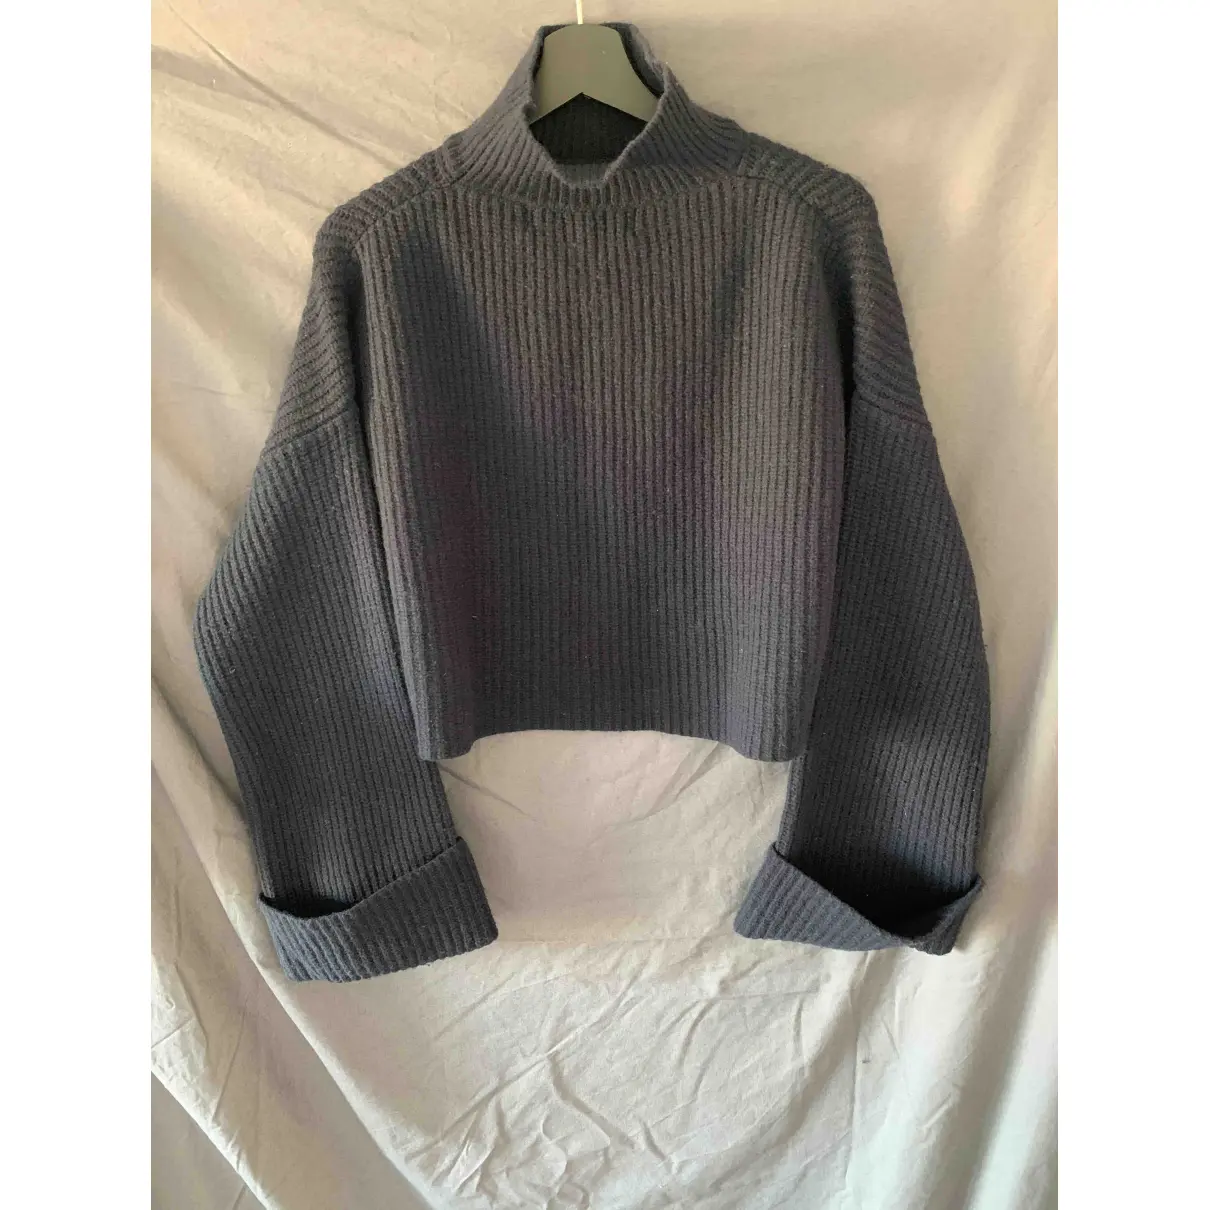 Buy Department 5 Wool jumper online